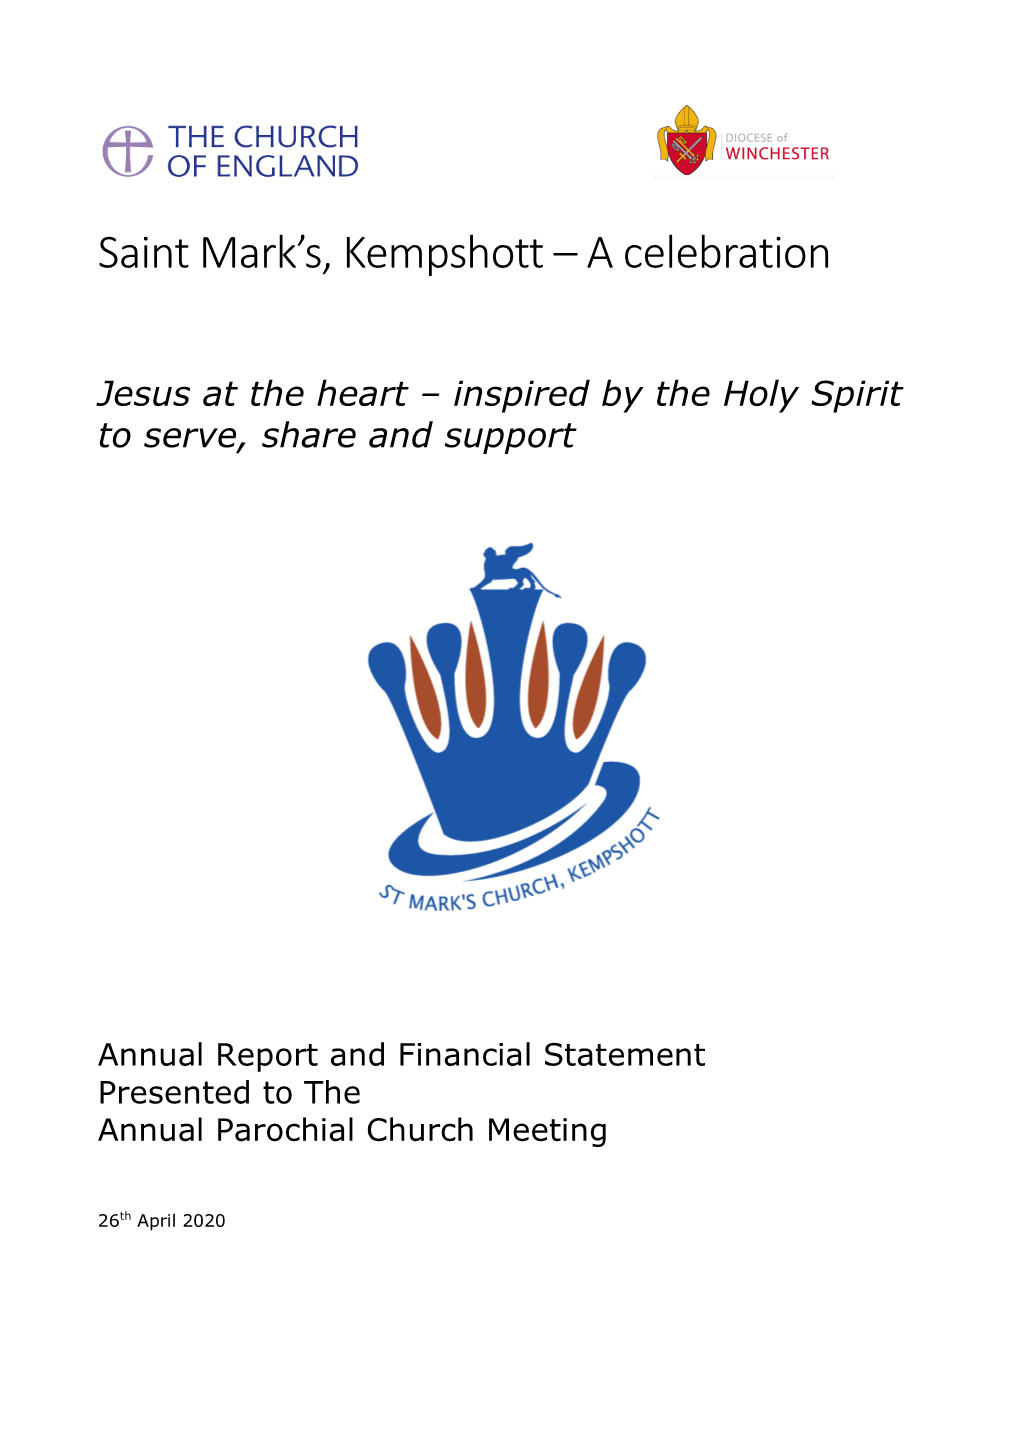 Saint Mark's, Kempshott – a Celebration